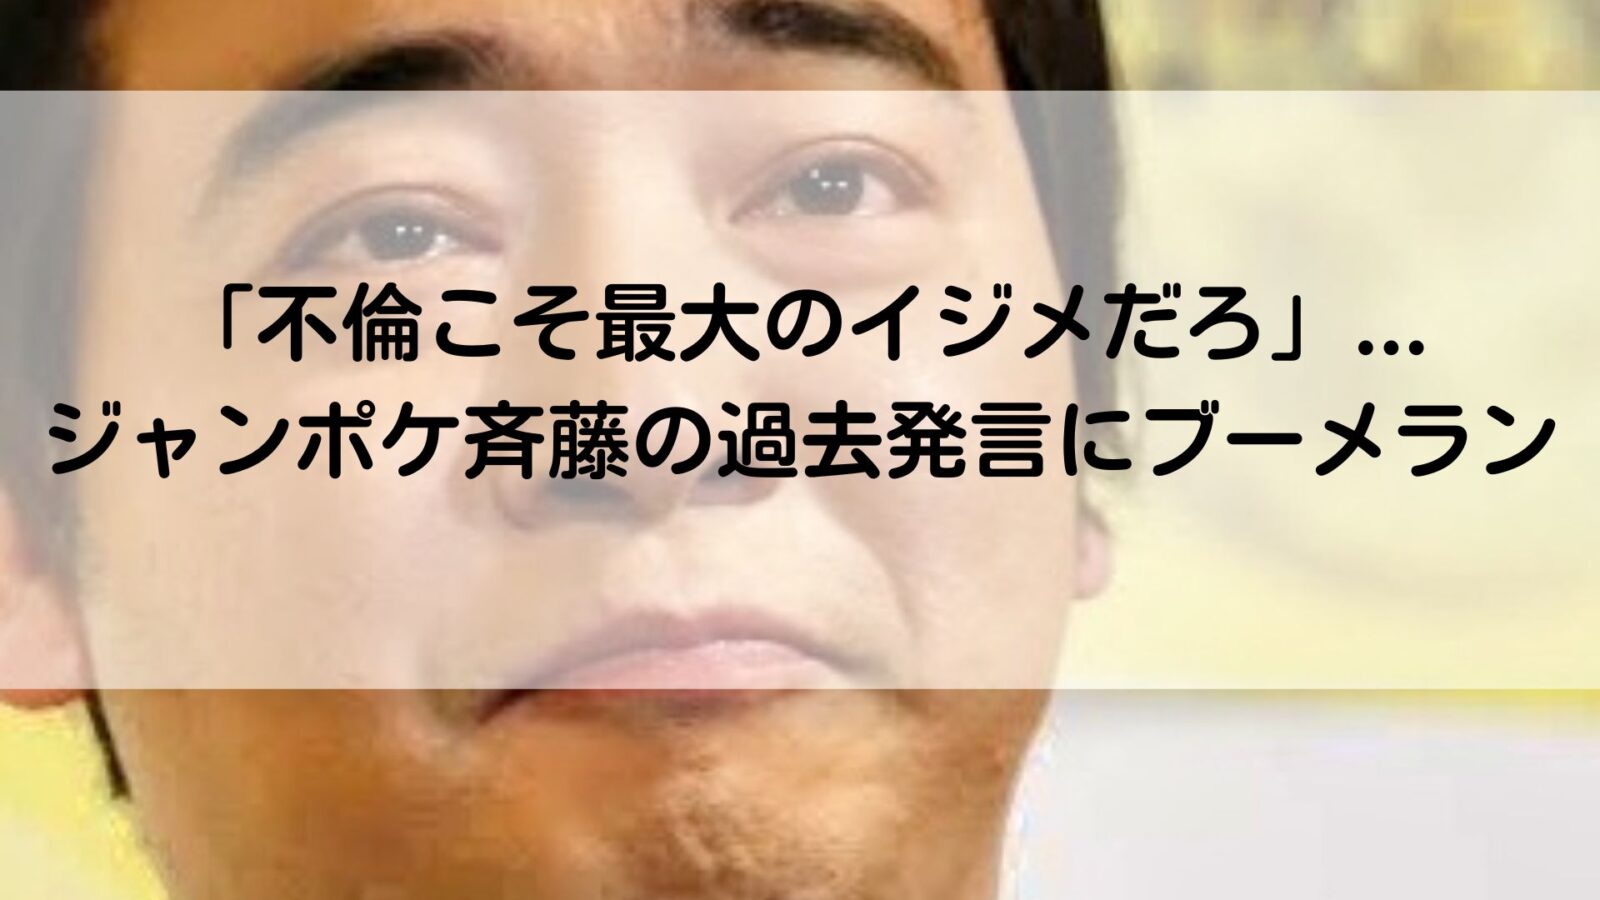 ジャンポケ斉藤の記事のアイキャッチ画像